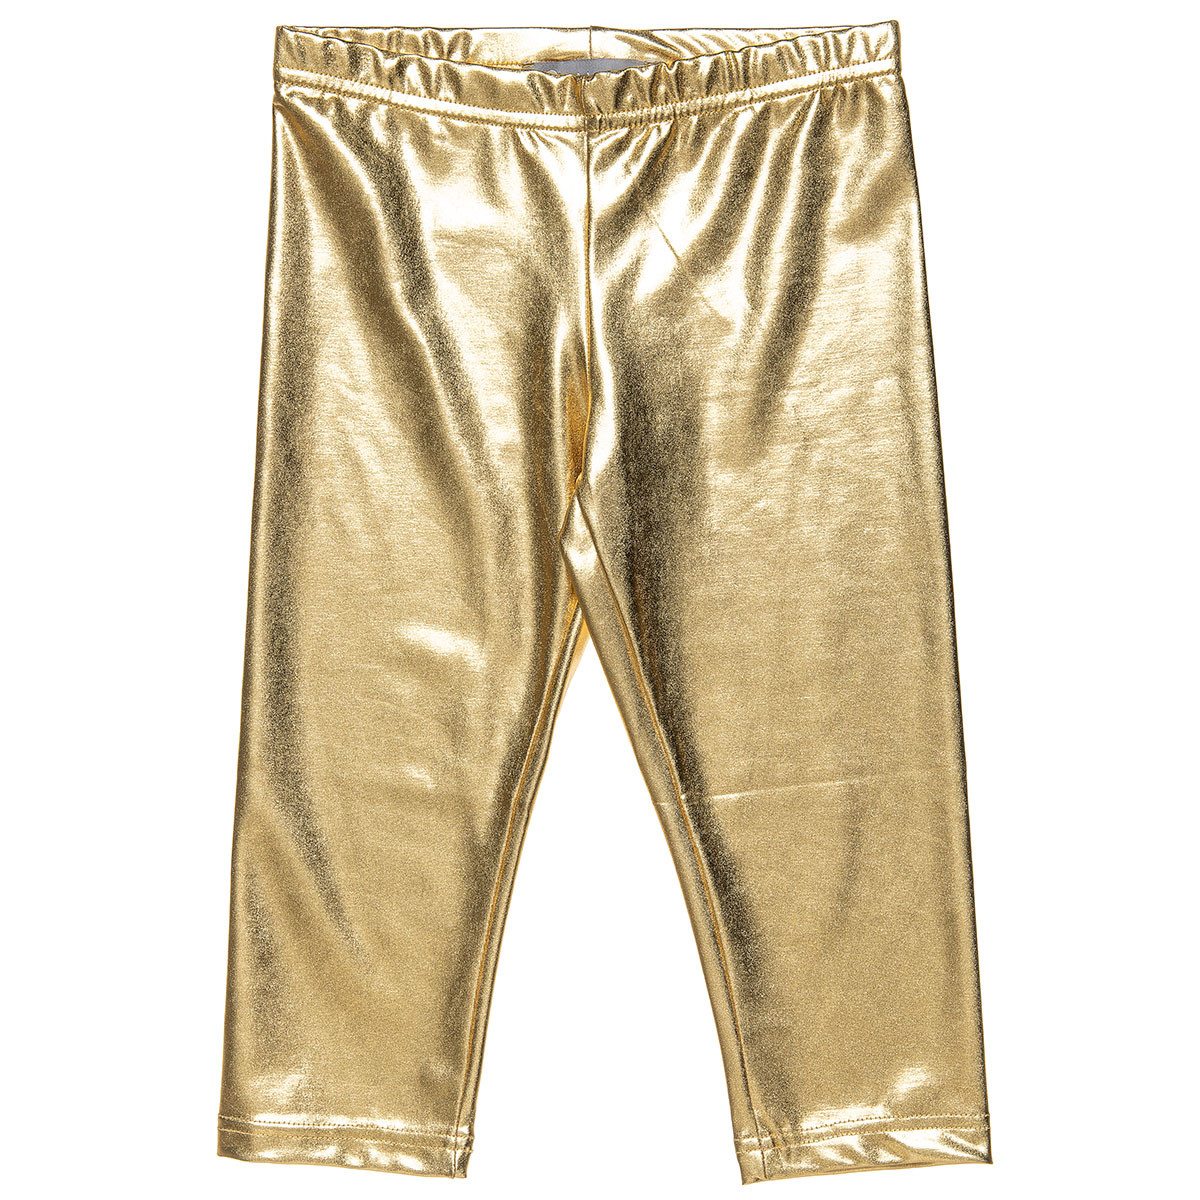 Buy Gold & Silver Leggings for Women by Twin Birds Online | Ajio.com